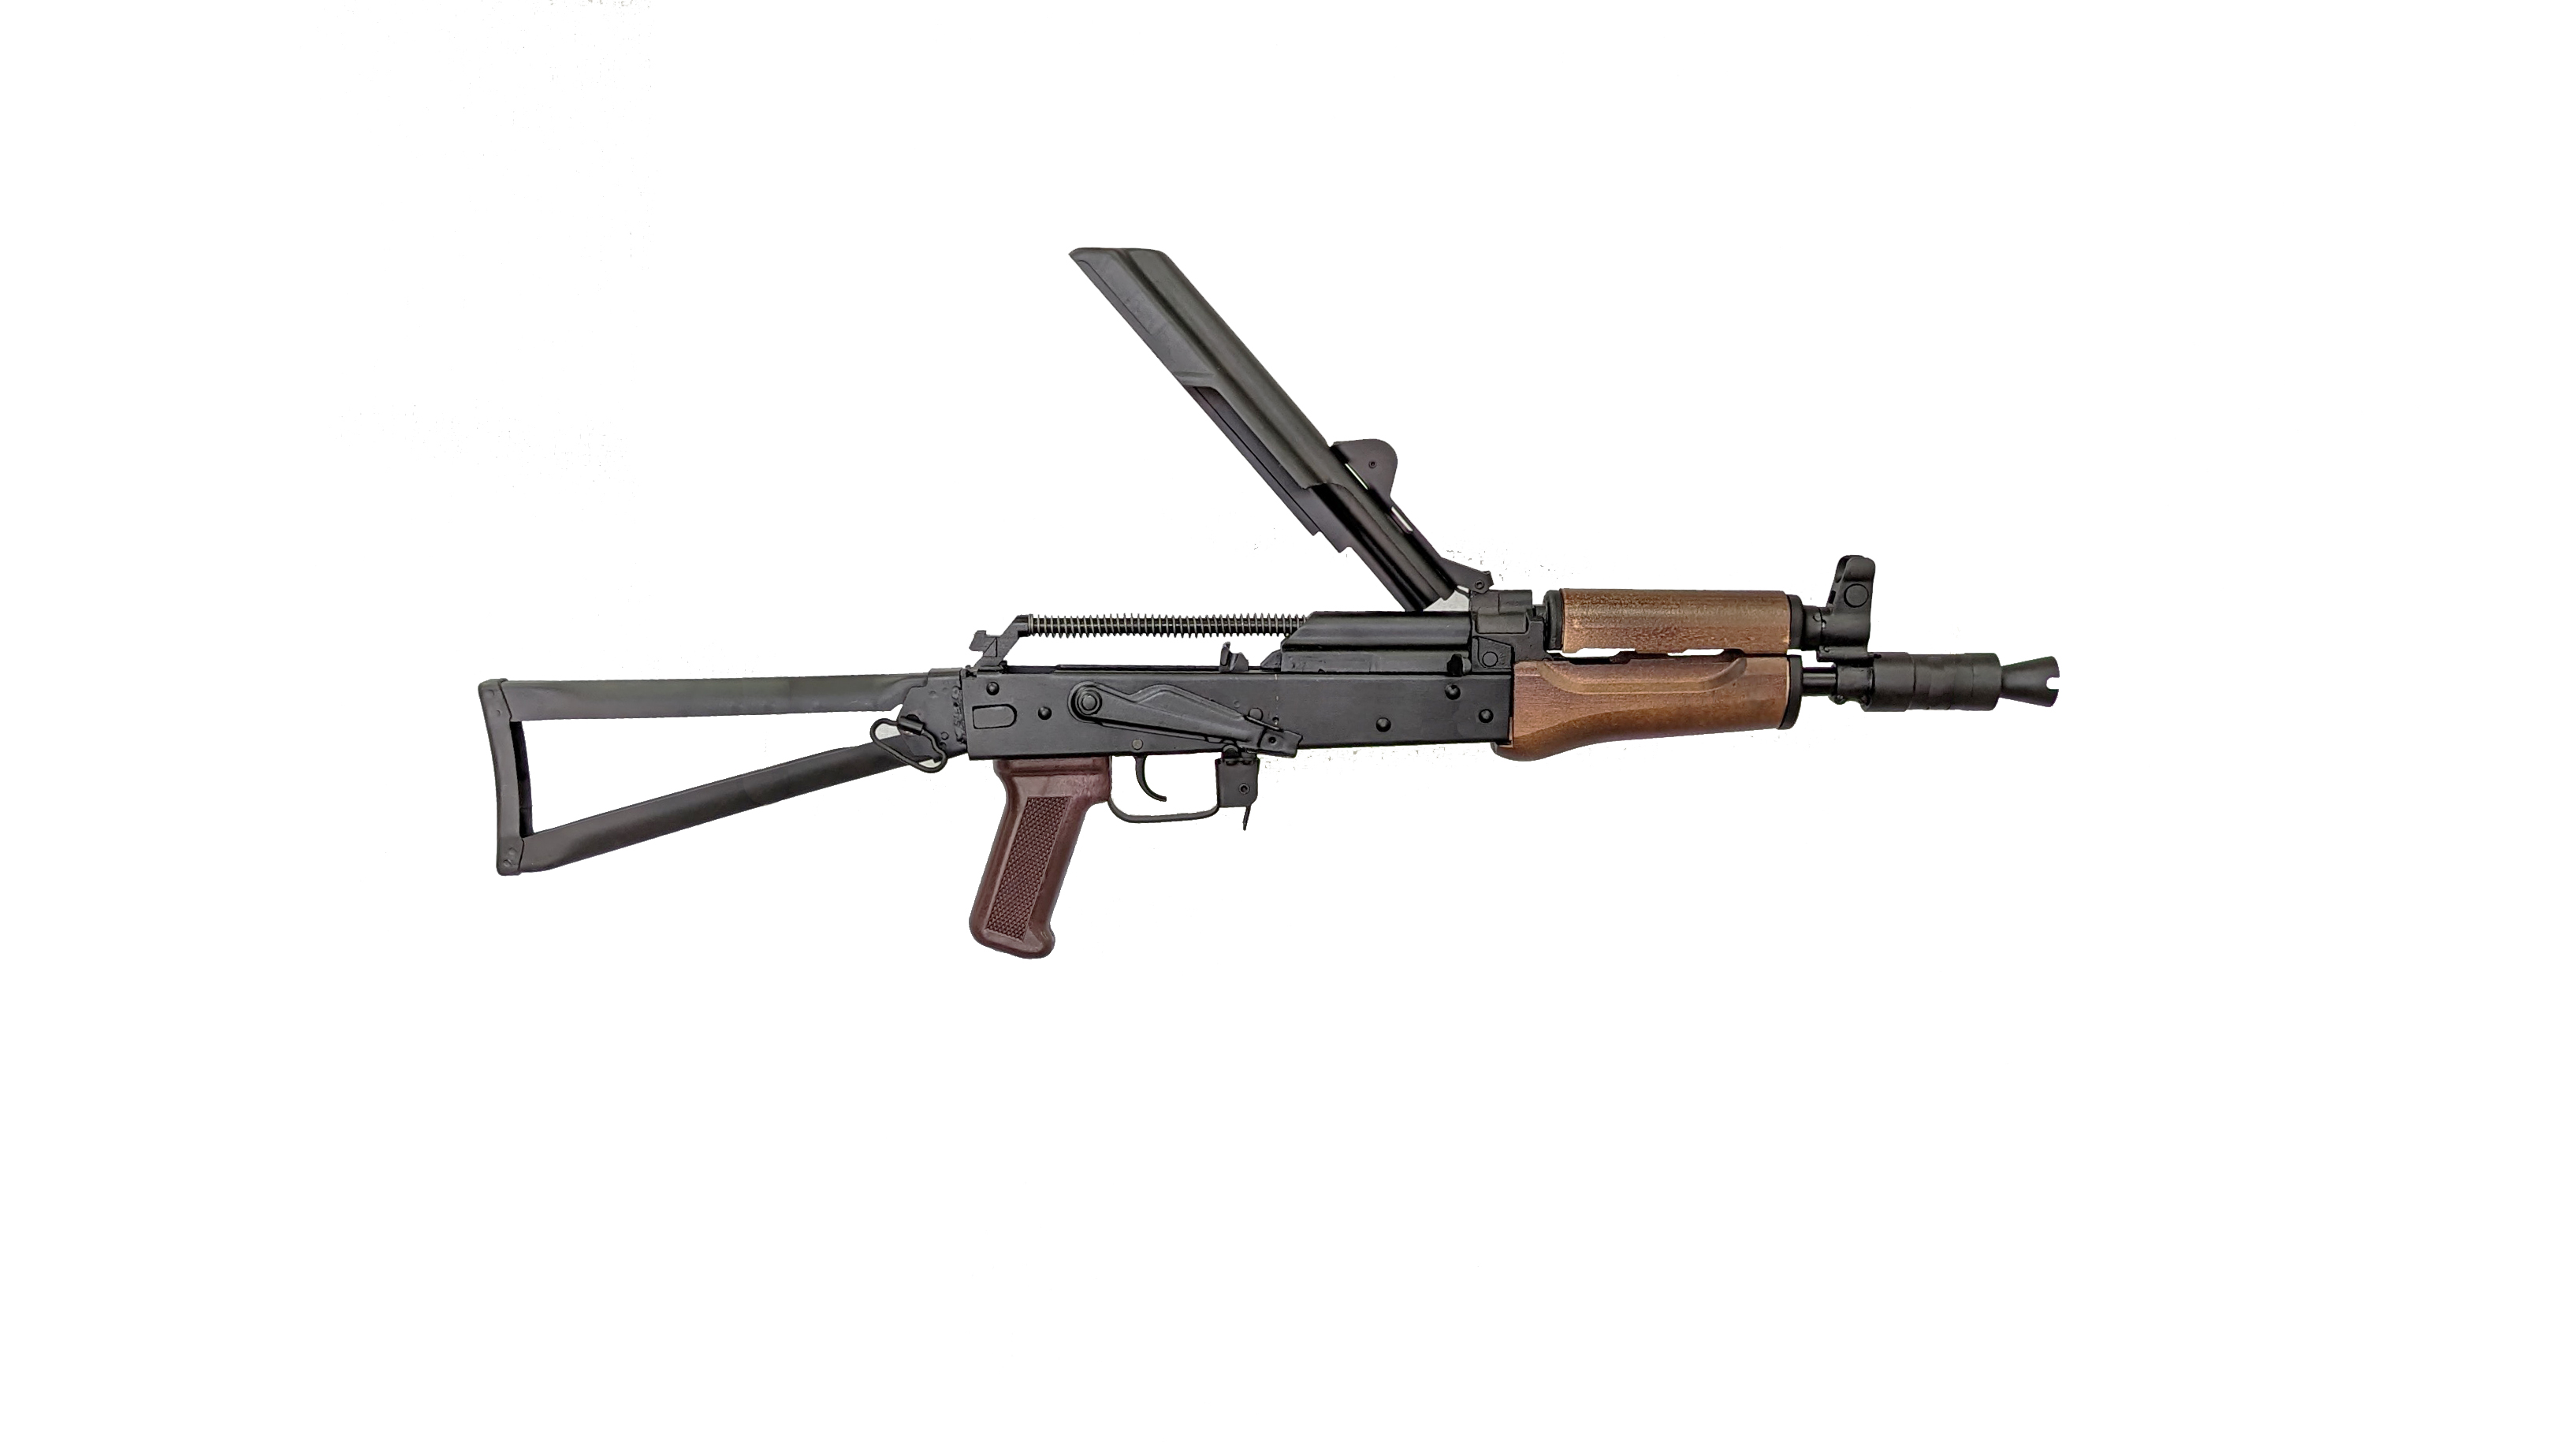 AKS-20U